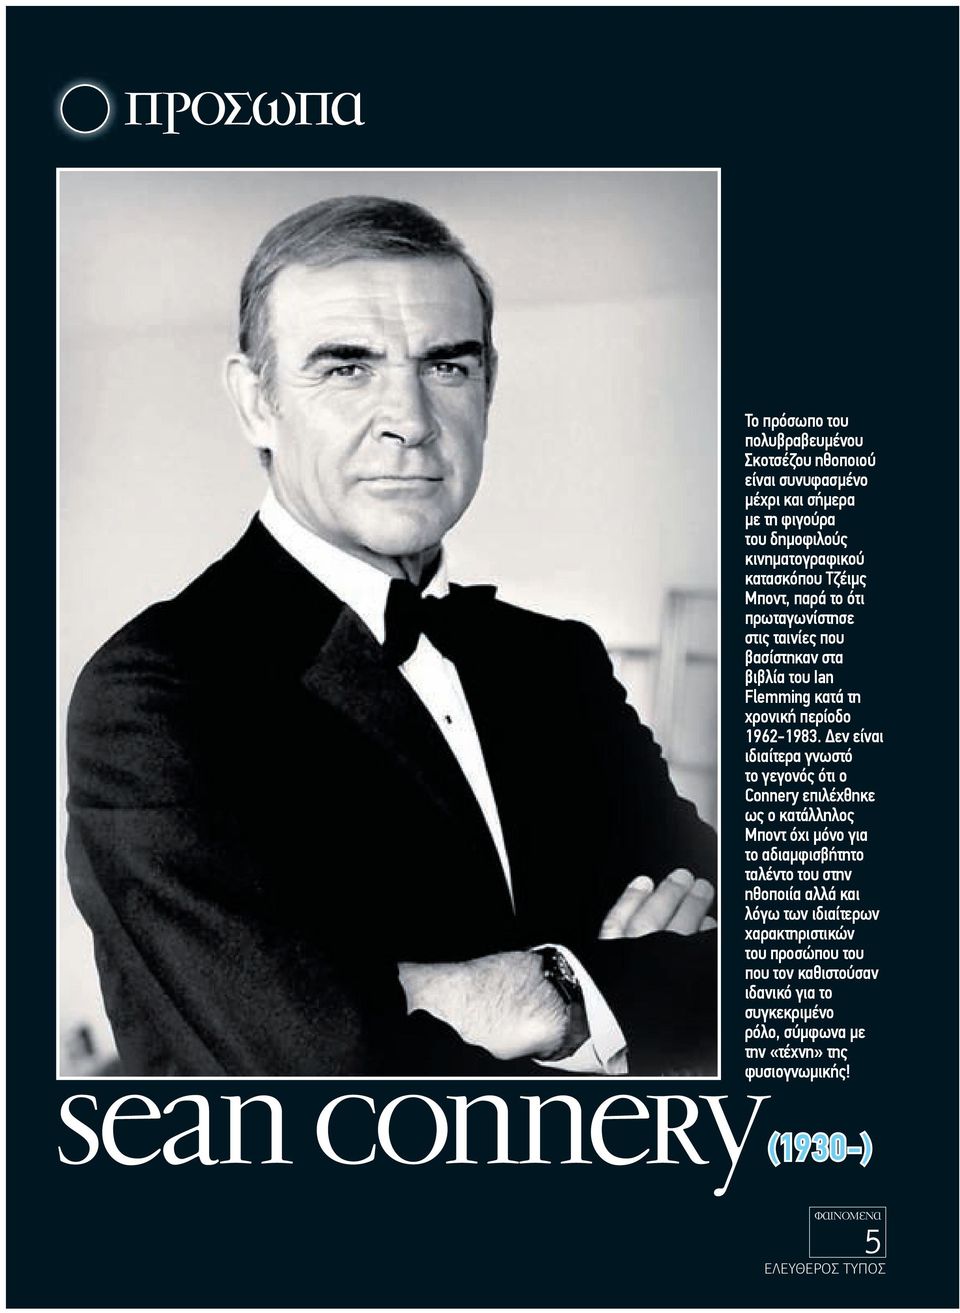 εν είναι ιδιαίτερα γνωστό το γεγονός ότι ο Connery επιλέχθηκε ως ο κατάλληλος Μποντ όχι µόνο για το αδιαµφισβήτητο ταλέντο του στην ηθοποιία αλλά και λόγω